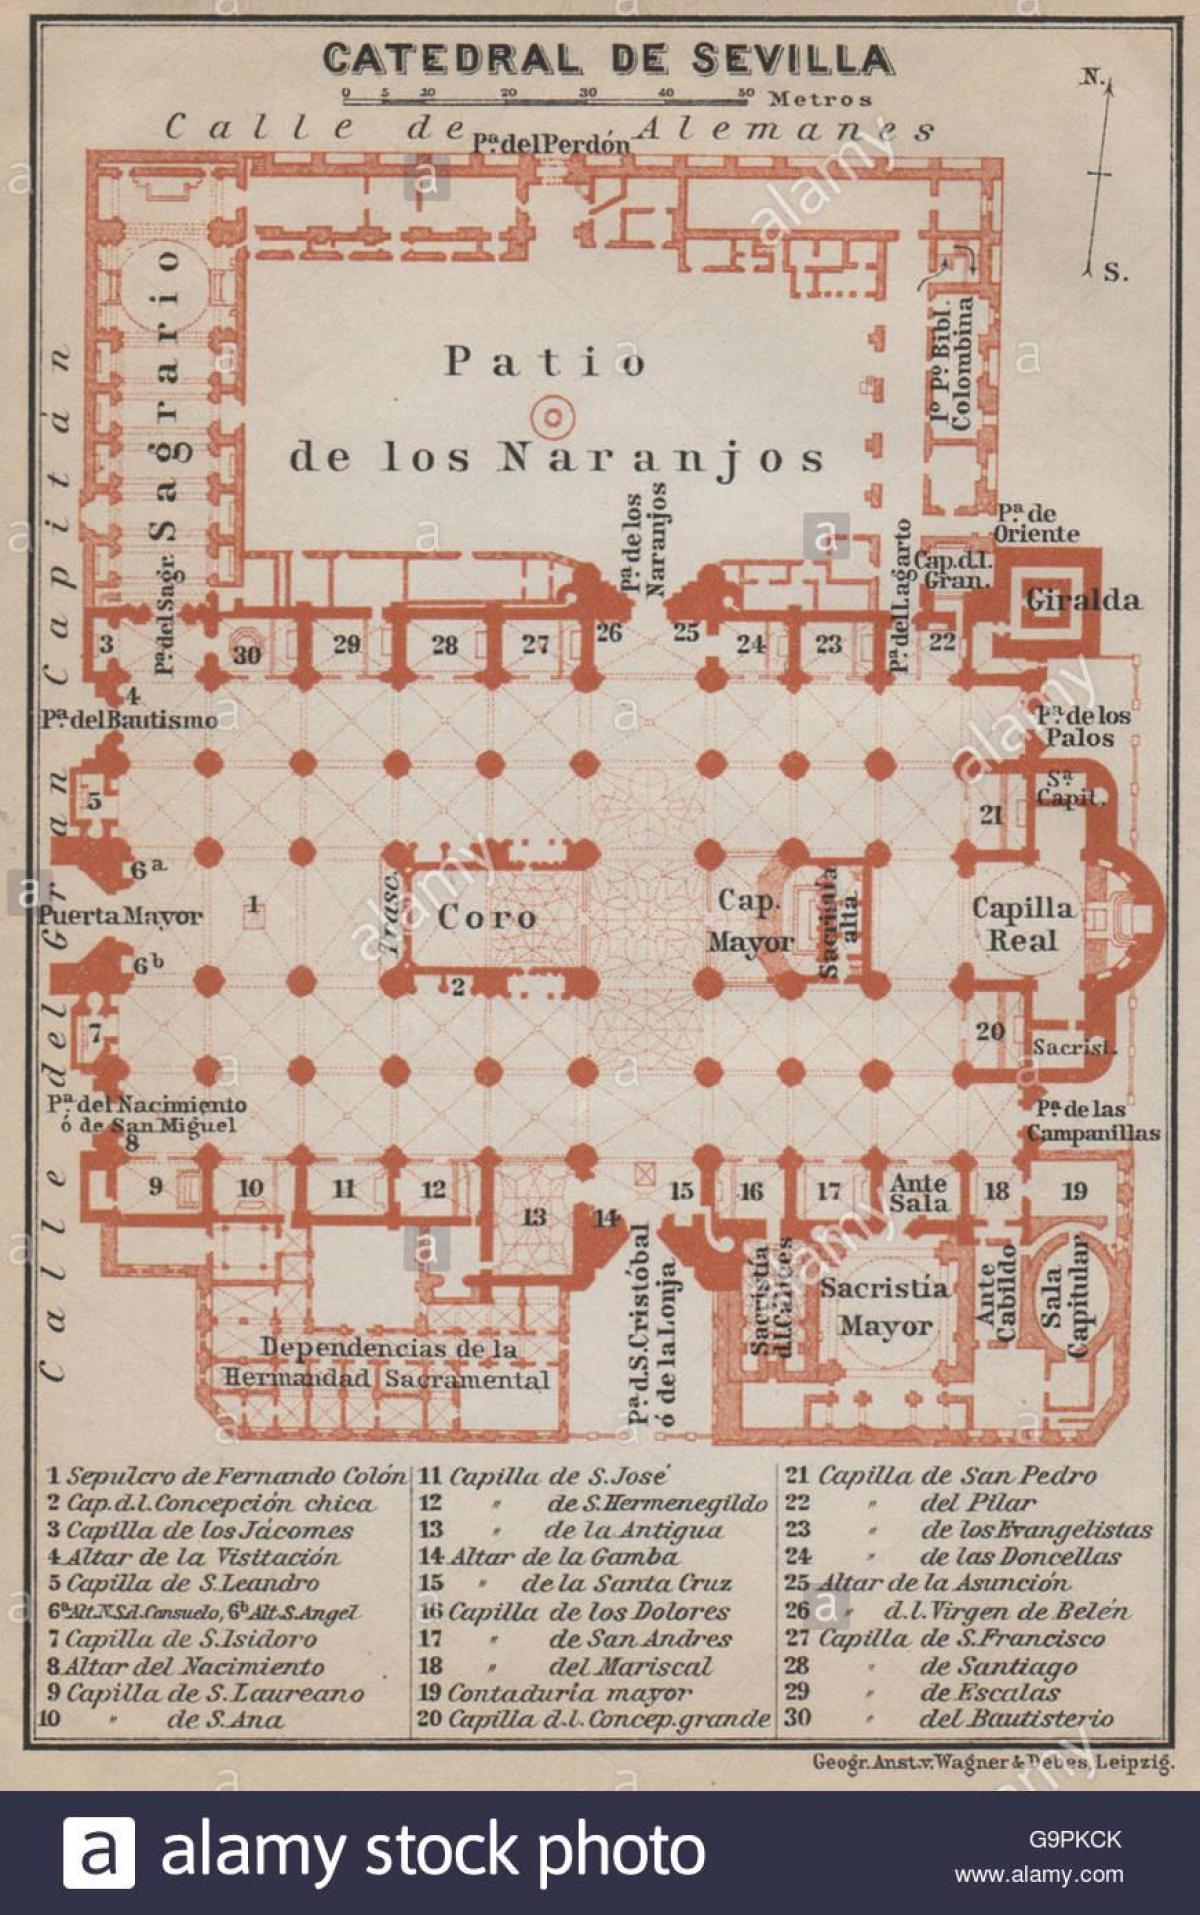 mapa catedral de sevilla